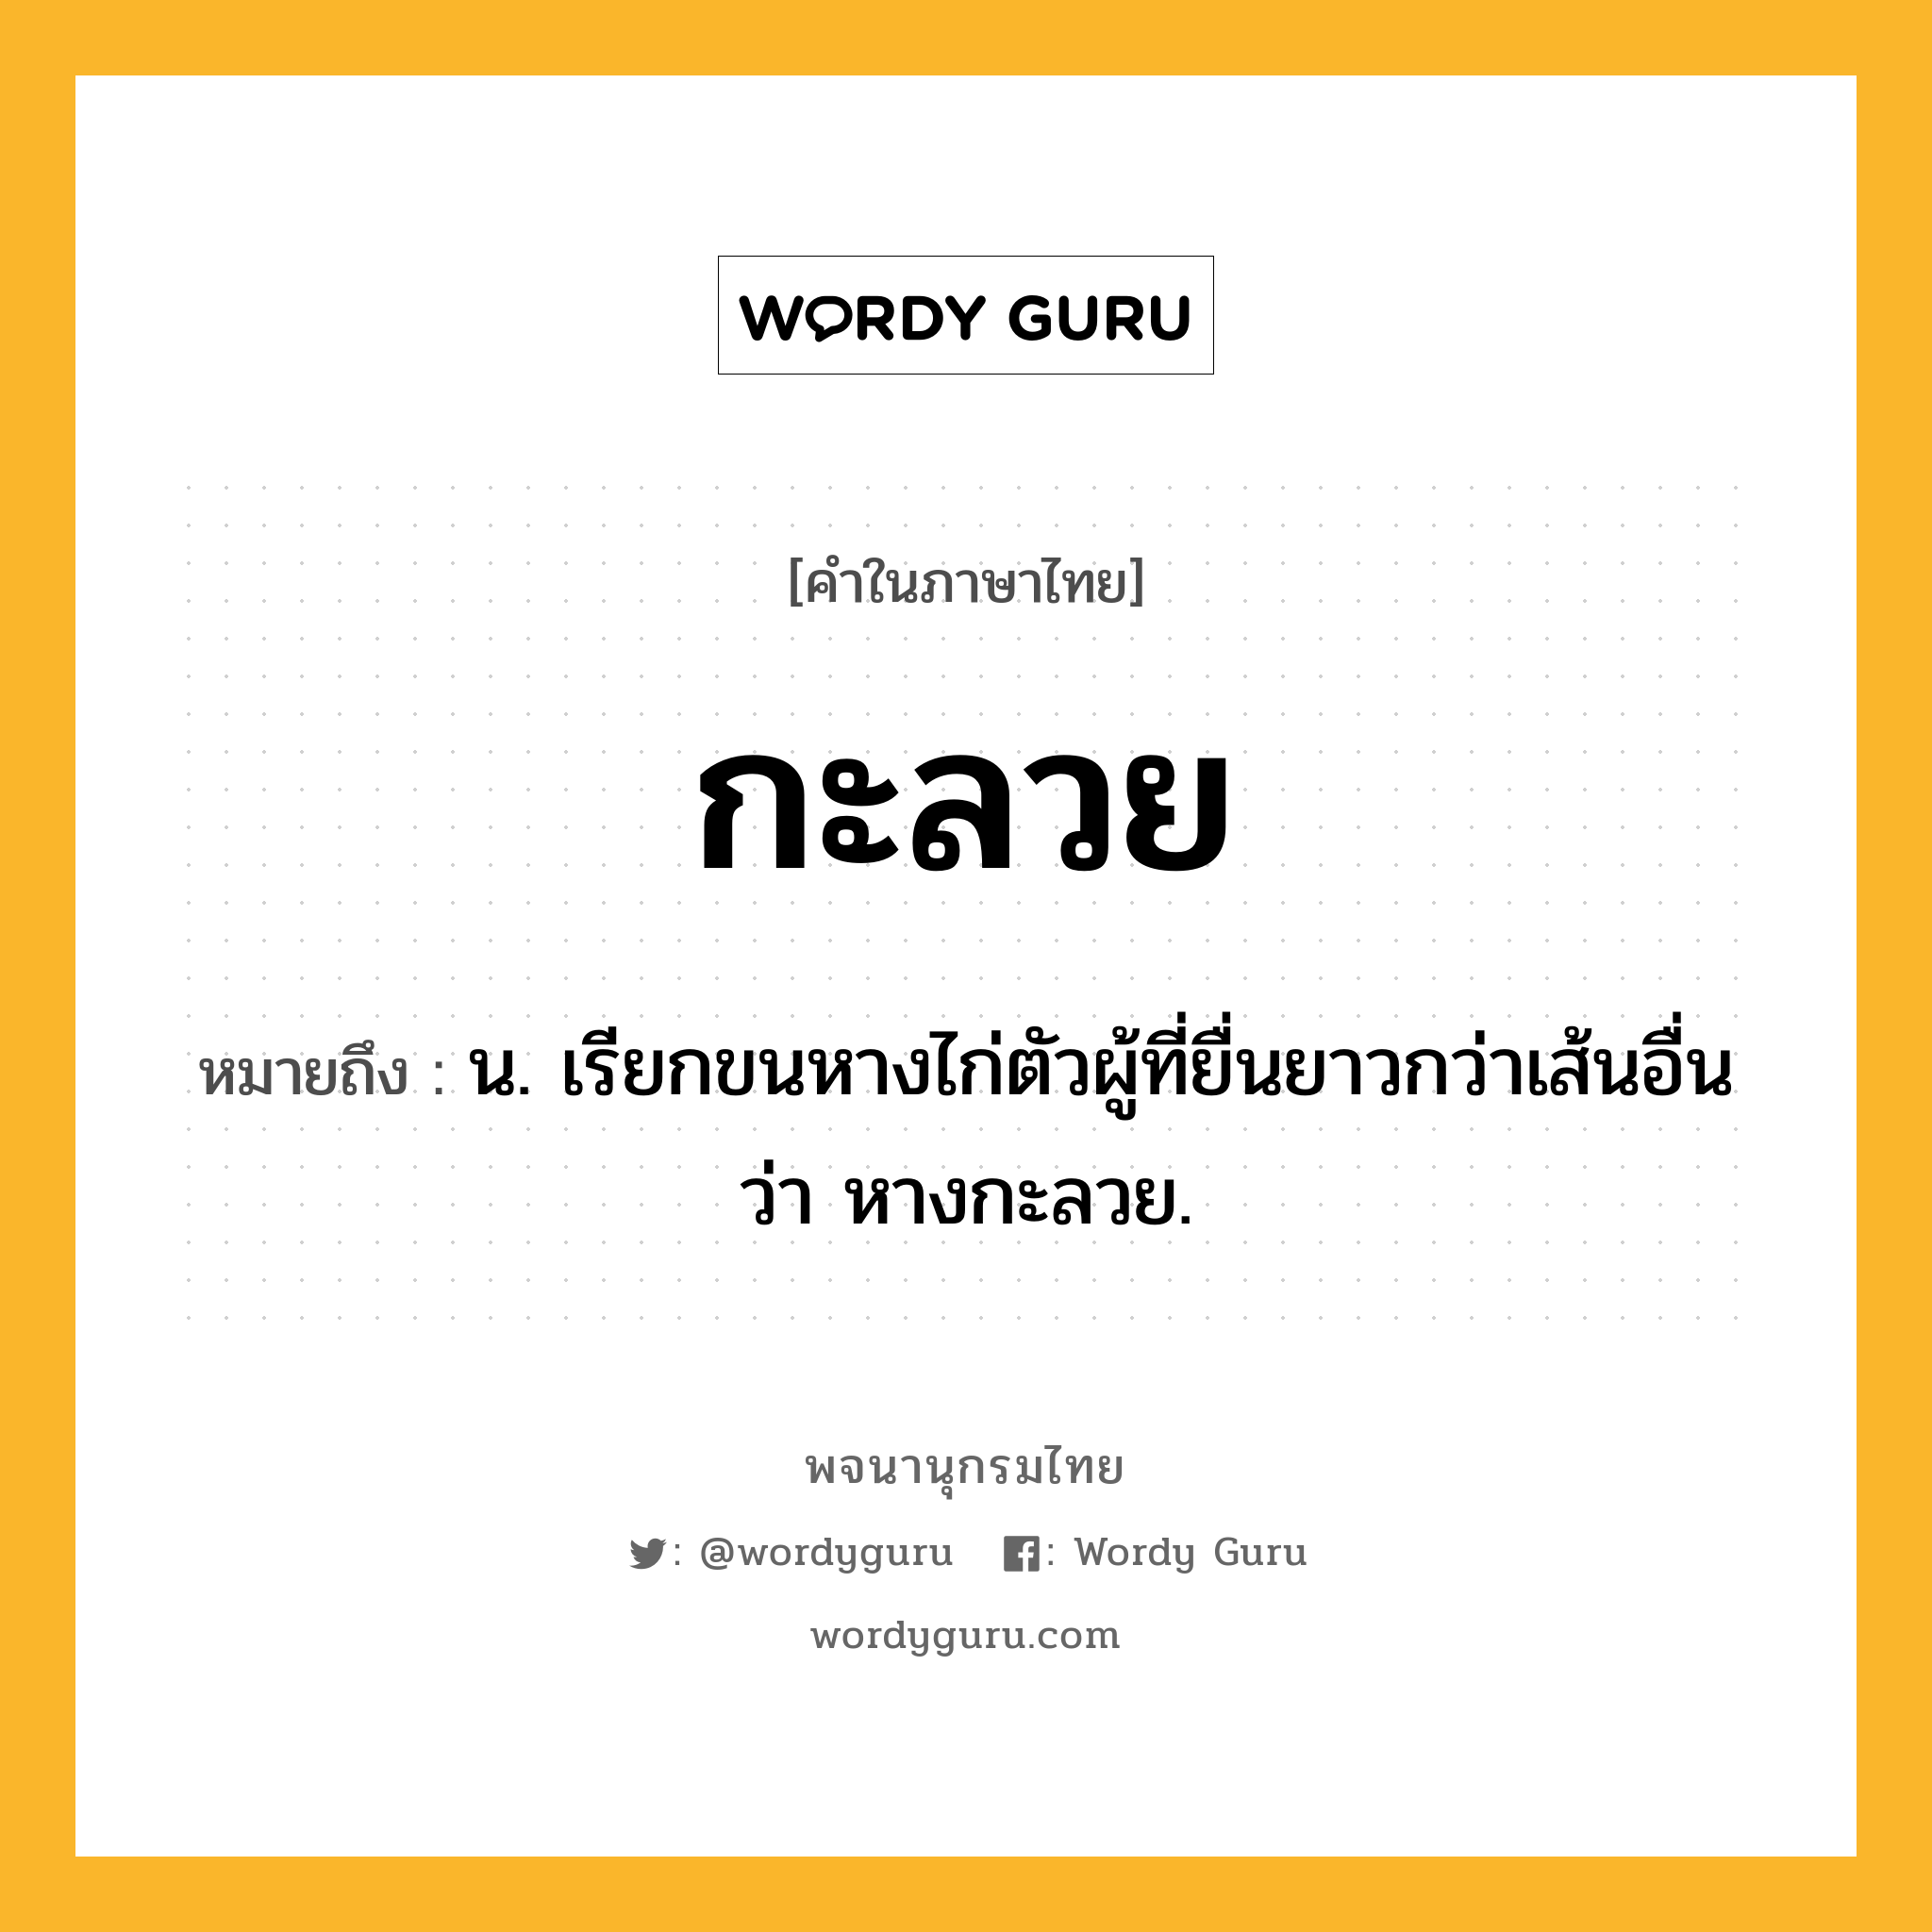 กะลวย หมายถึงอะไร?, คำในภาษาไทย กะลวย หมายถึง น. เรียกขนหางไก่ตัวผู้ที่ยื่นยาวกว่าเส้นอื่นว่า หางกะลวย.